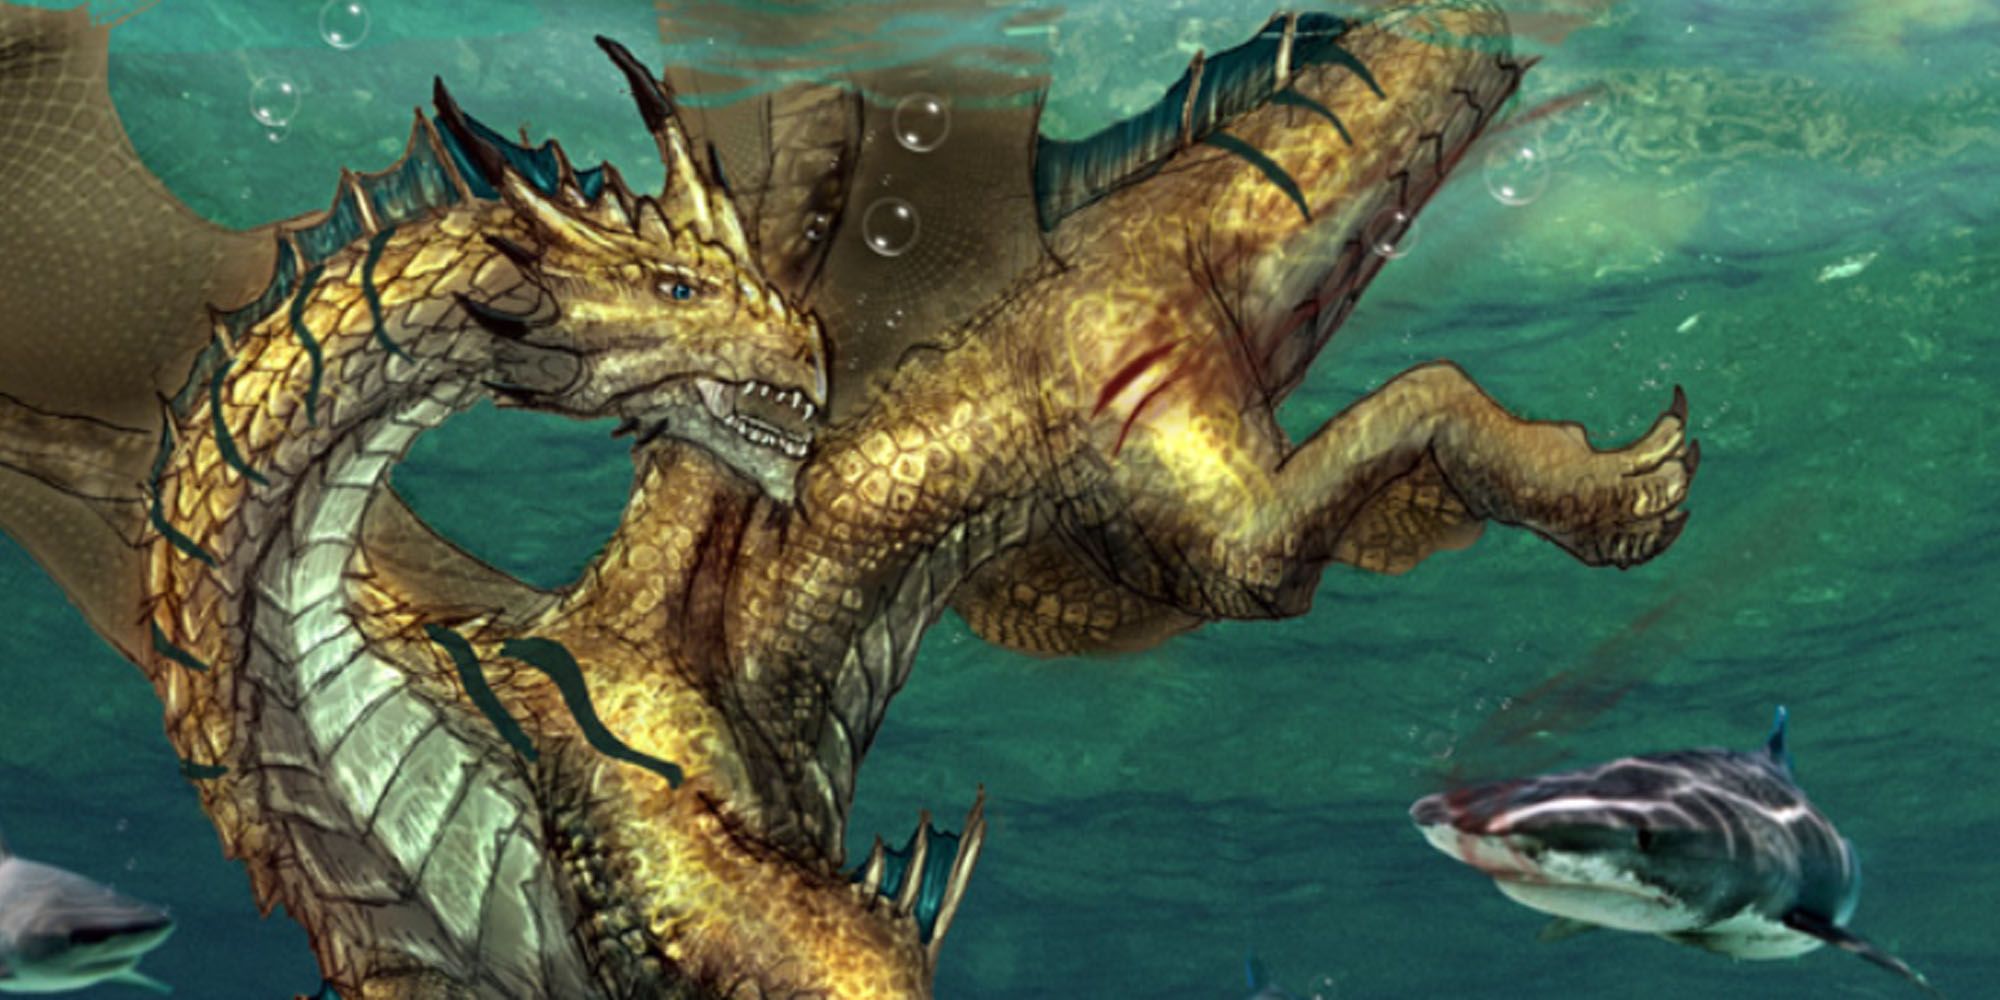 A bronze dragon underwater in DnD.